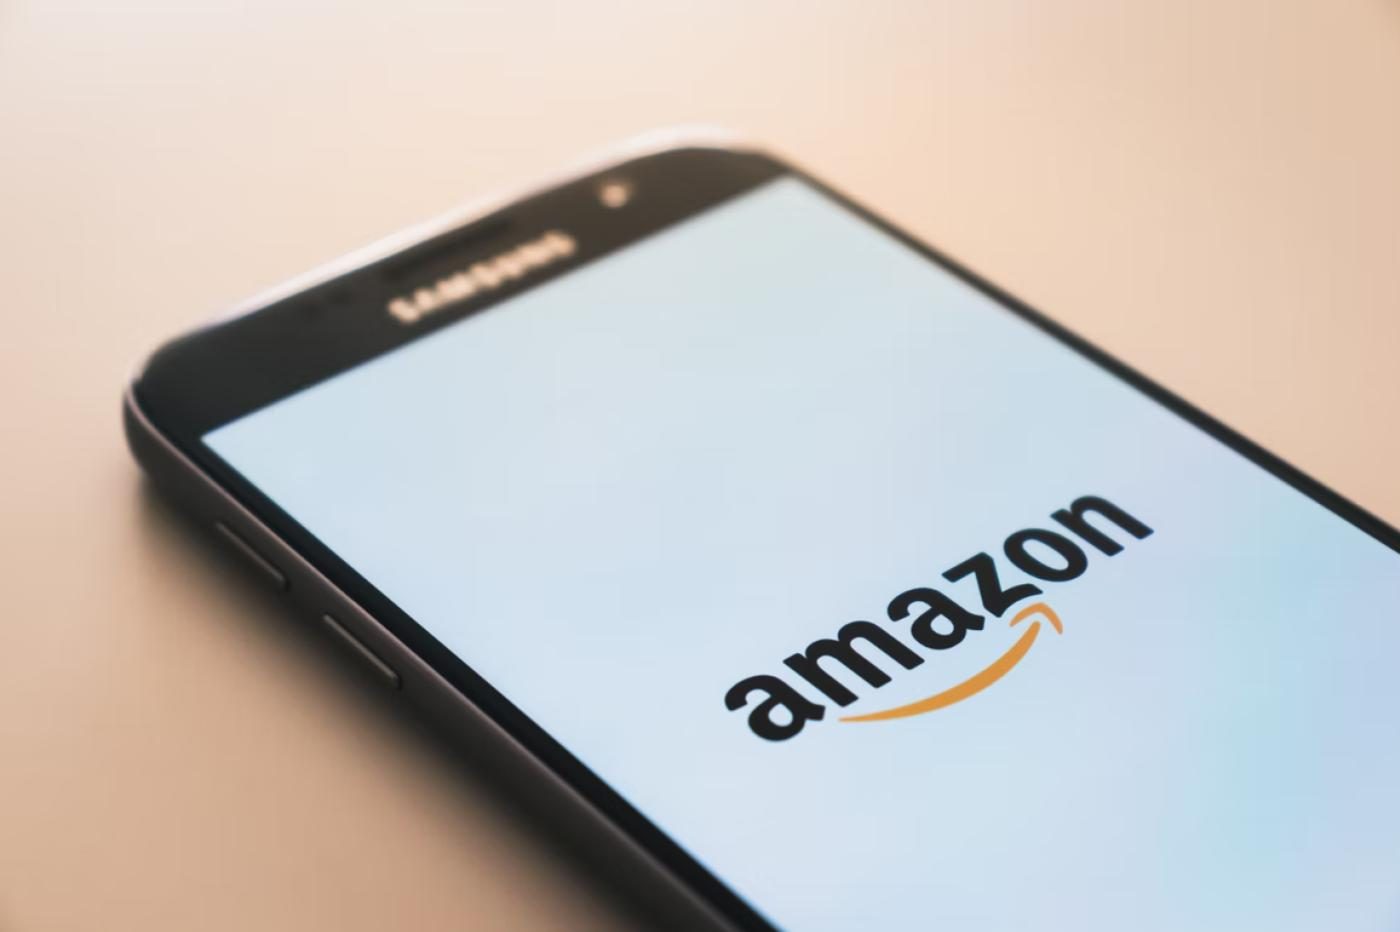 Amazon logo smartphone